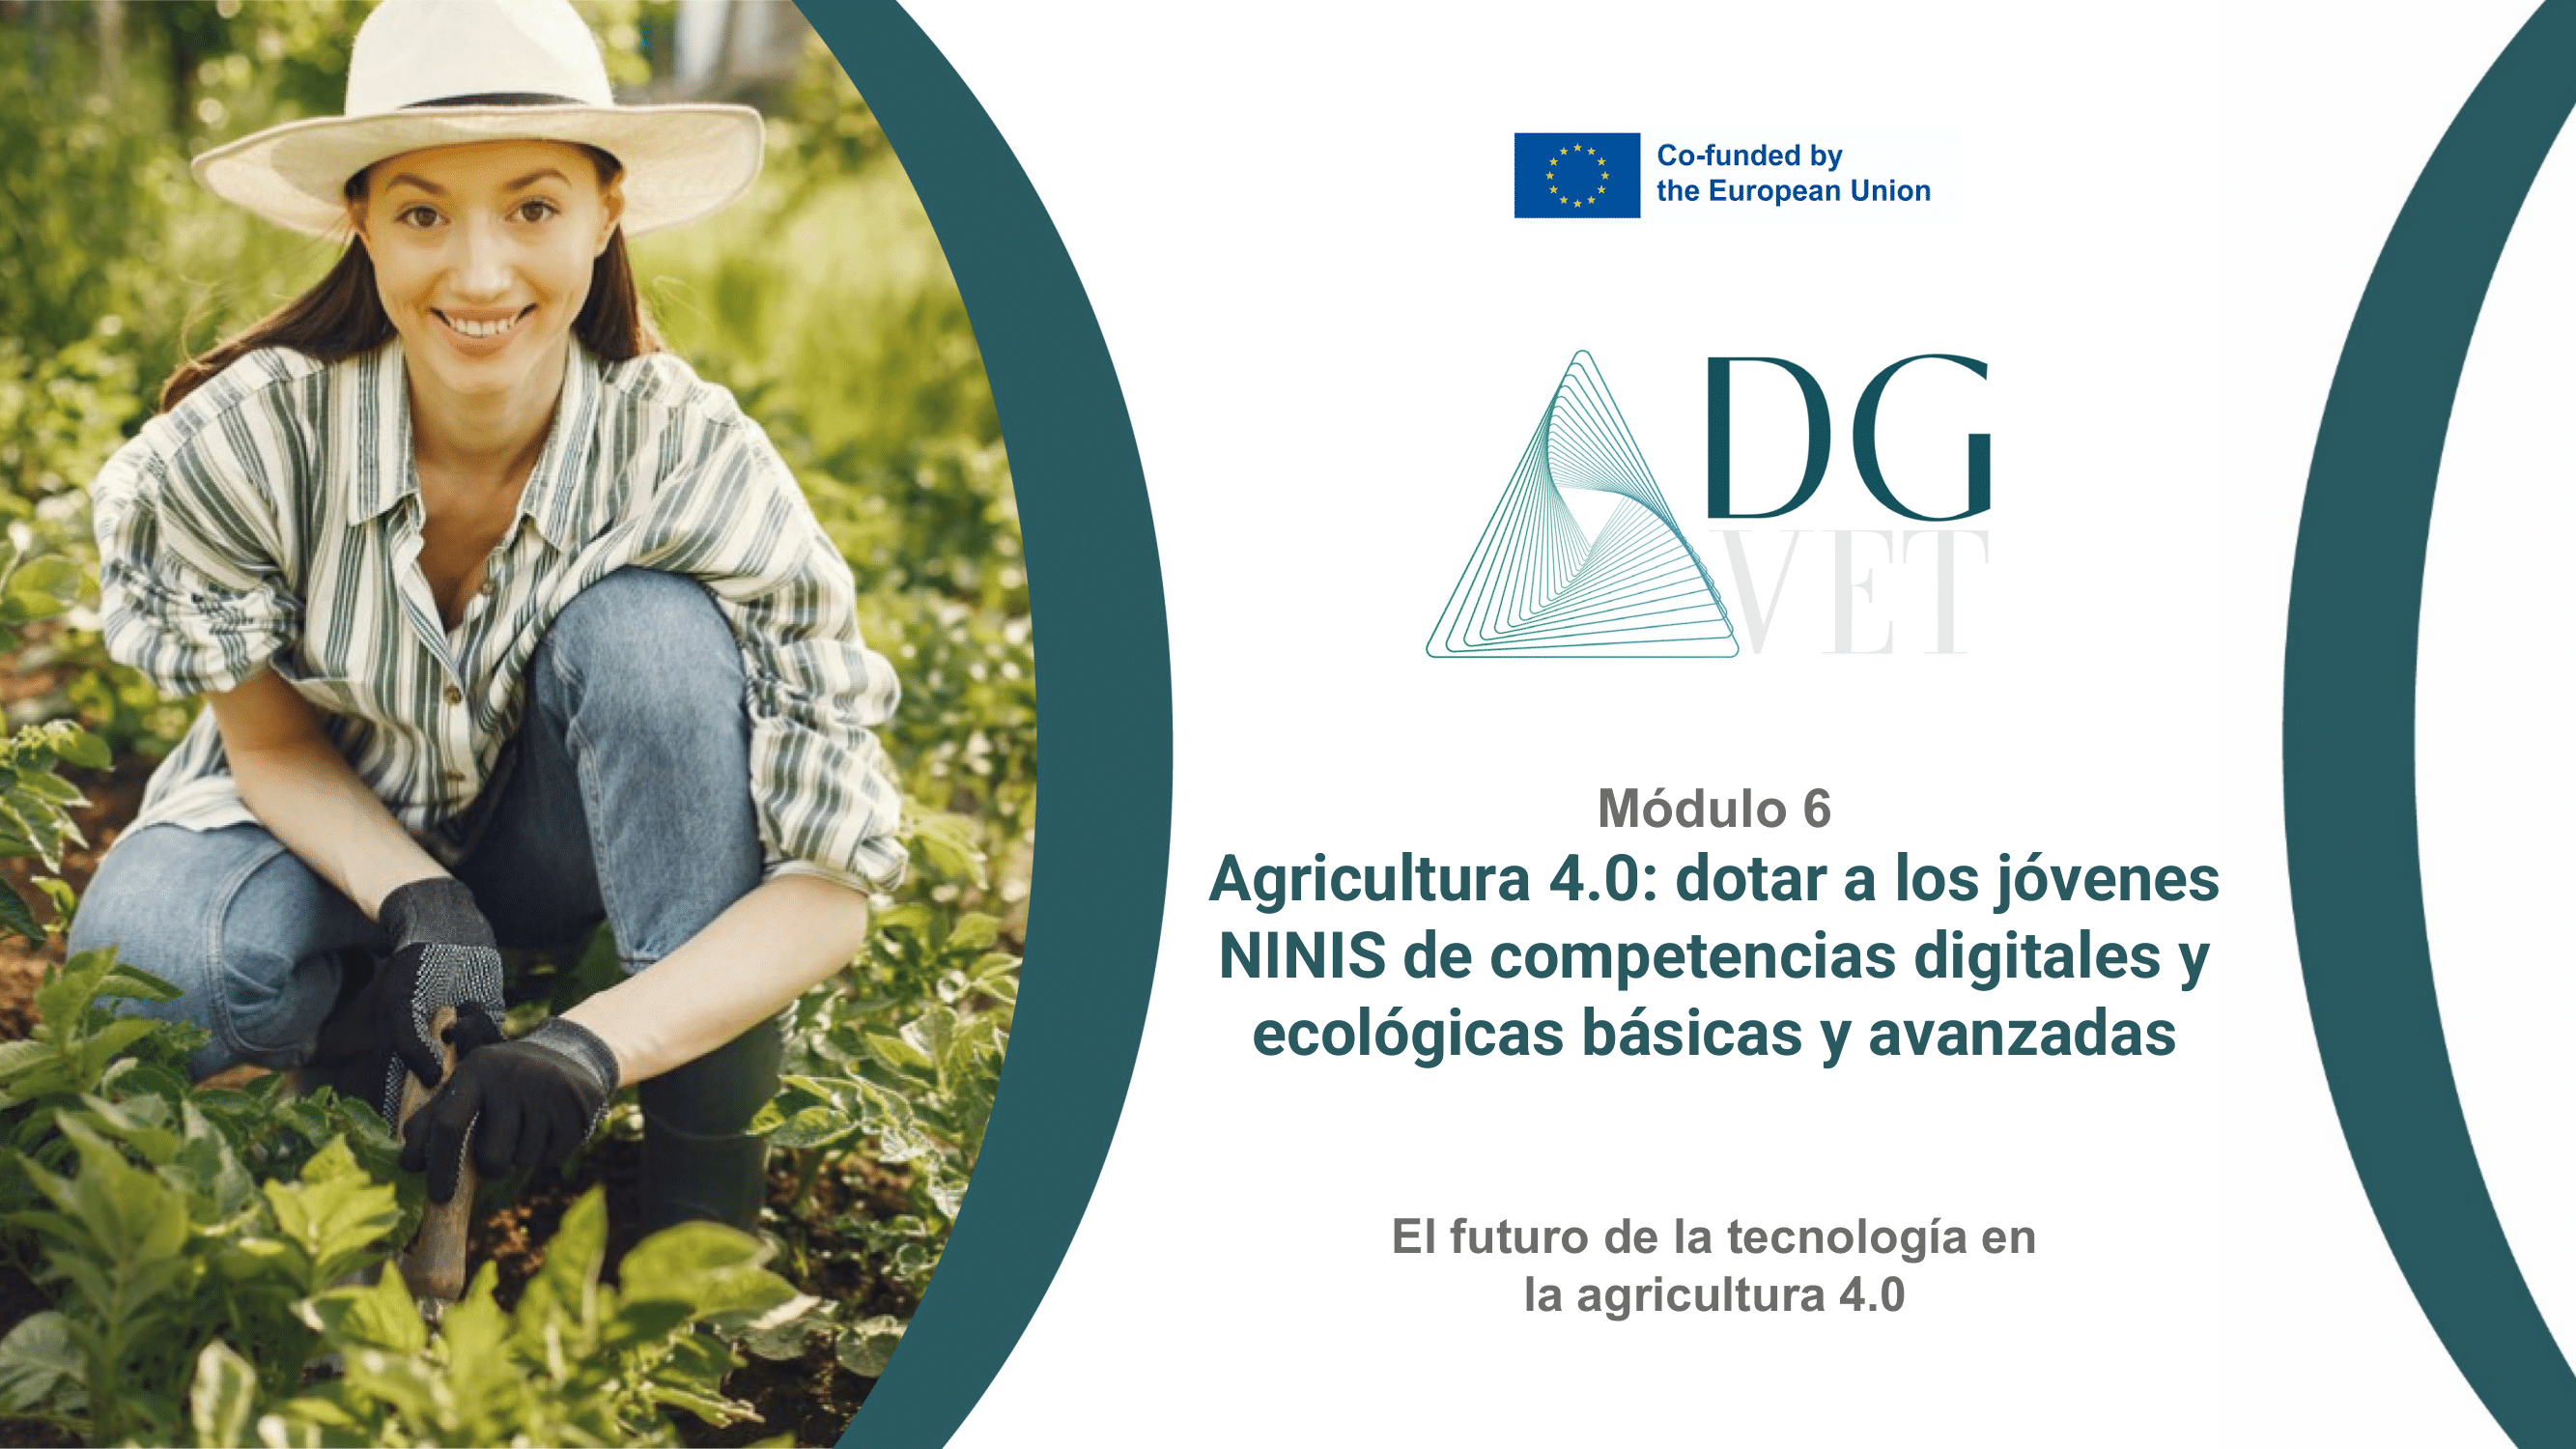 Módulo 6: “El futuro de la Tecnología a la Agricultura 4.0”